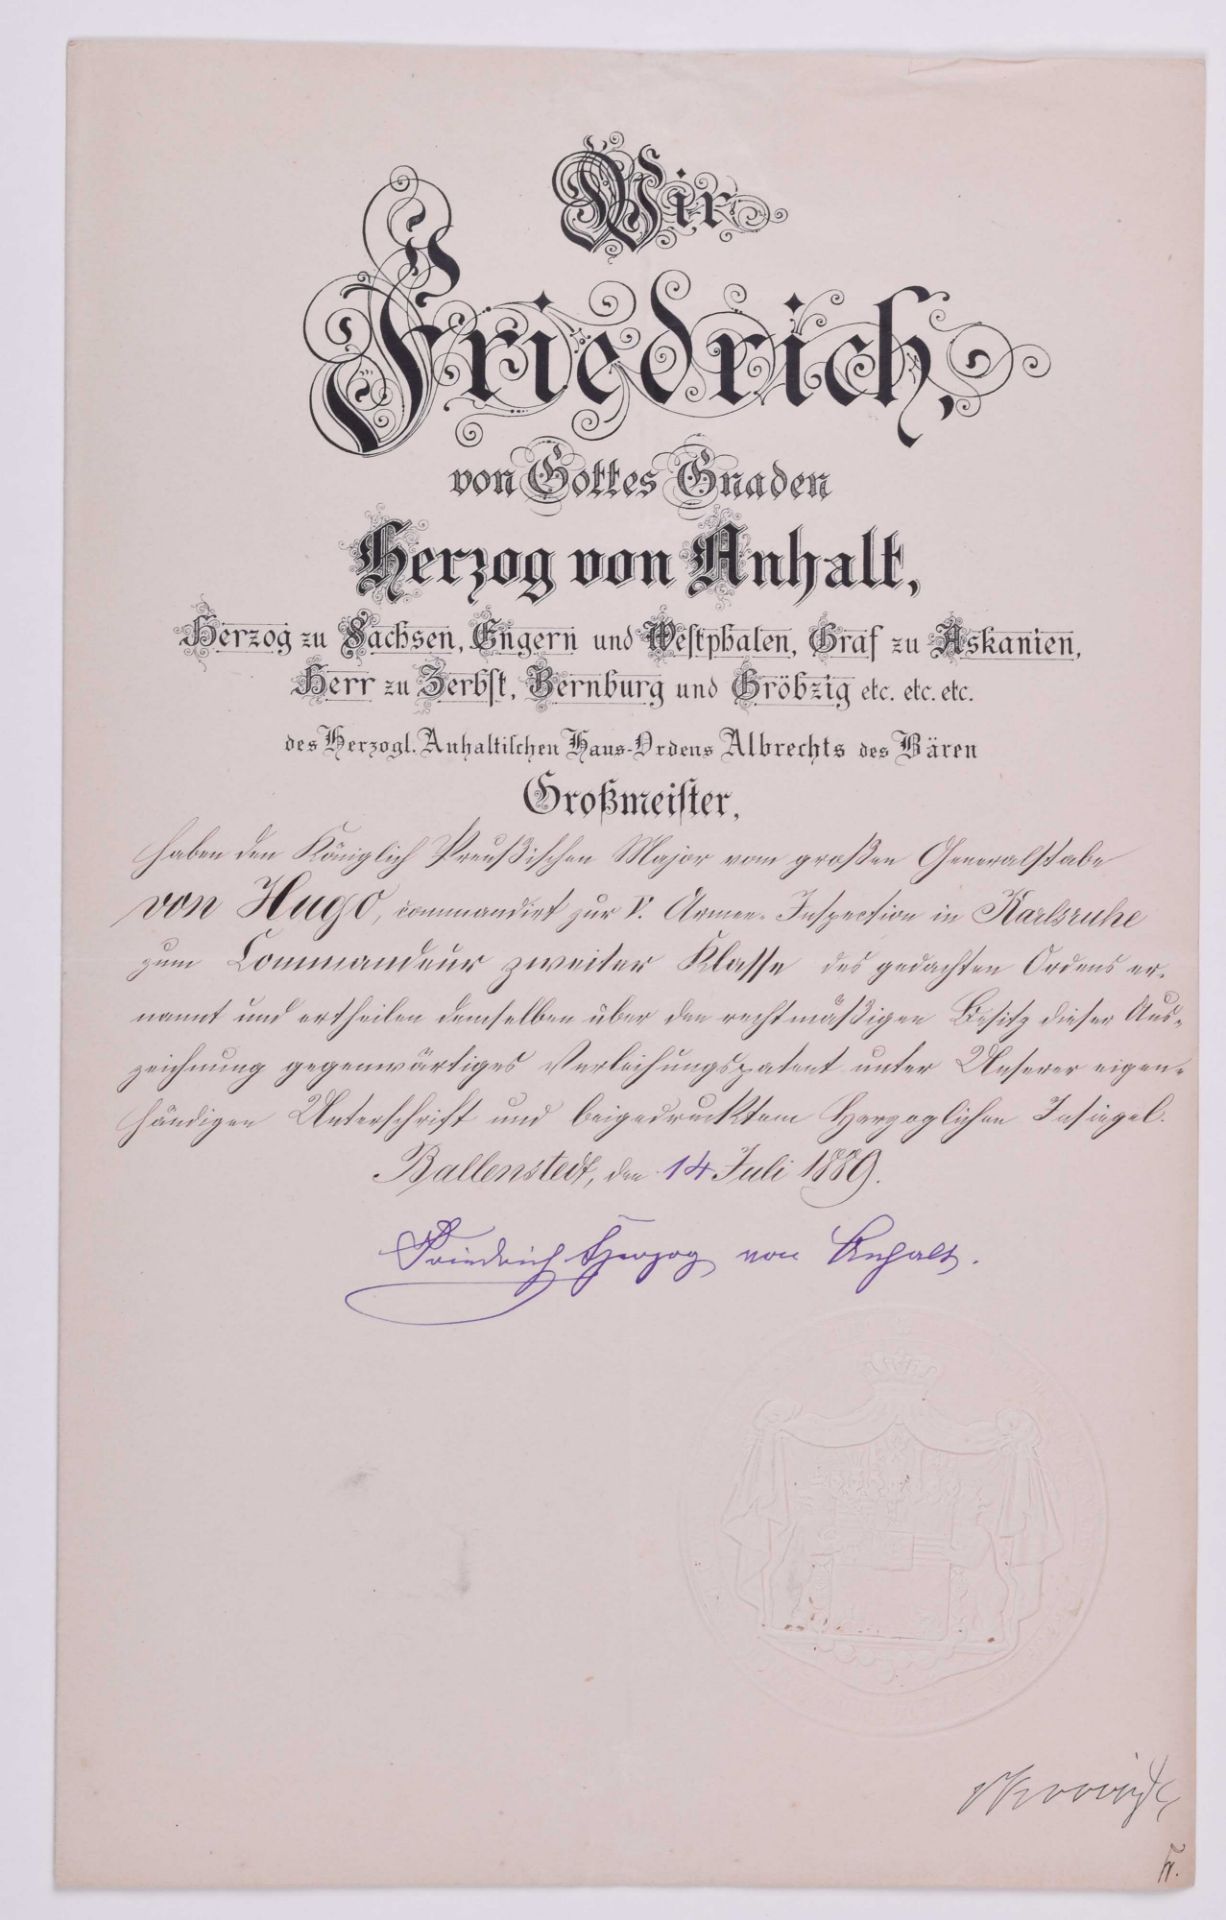 Verleihungsurkunde zum Kommandeur II. Klasse vom 14.07.1889 AnhaltCarl-Georg von Hugo mit